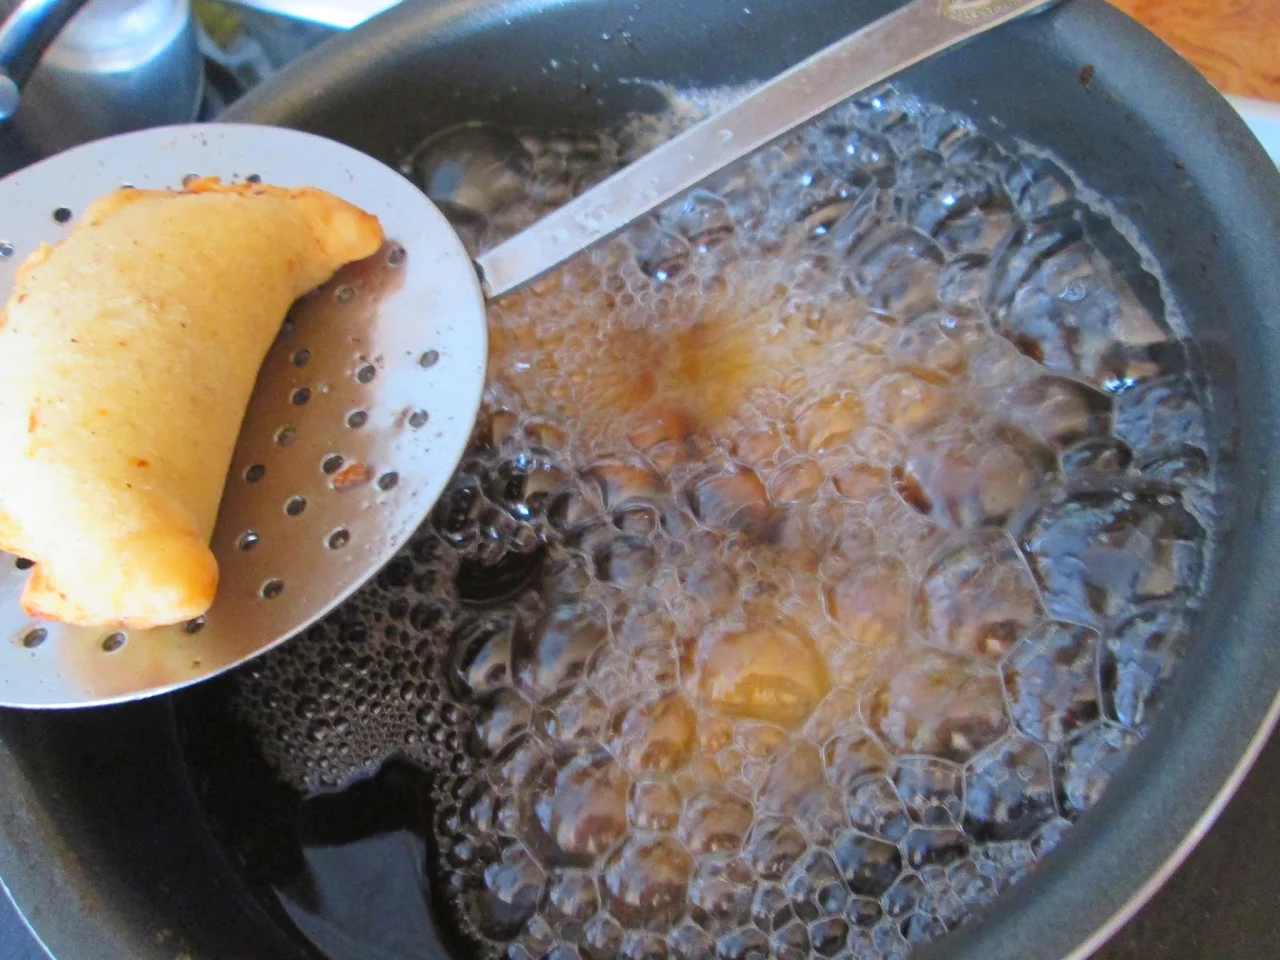 Czebureki- pierożki smażone w głębokim oleju z mięsnym farszem